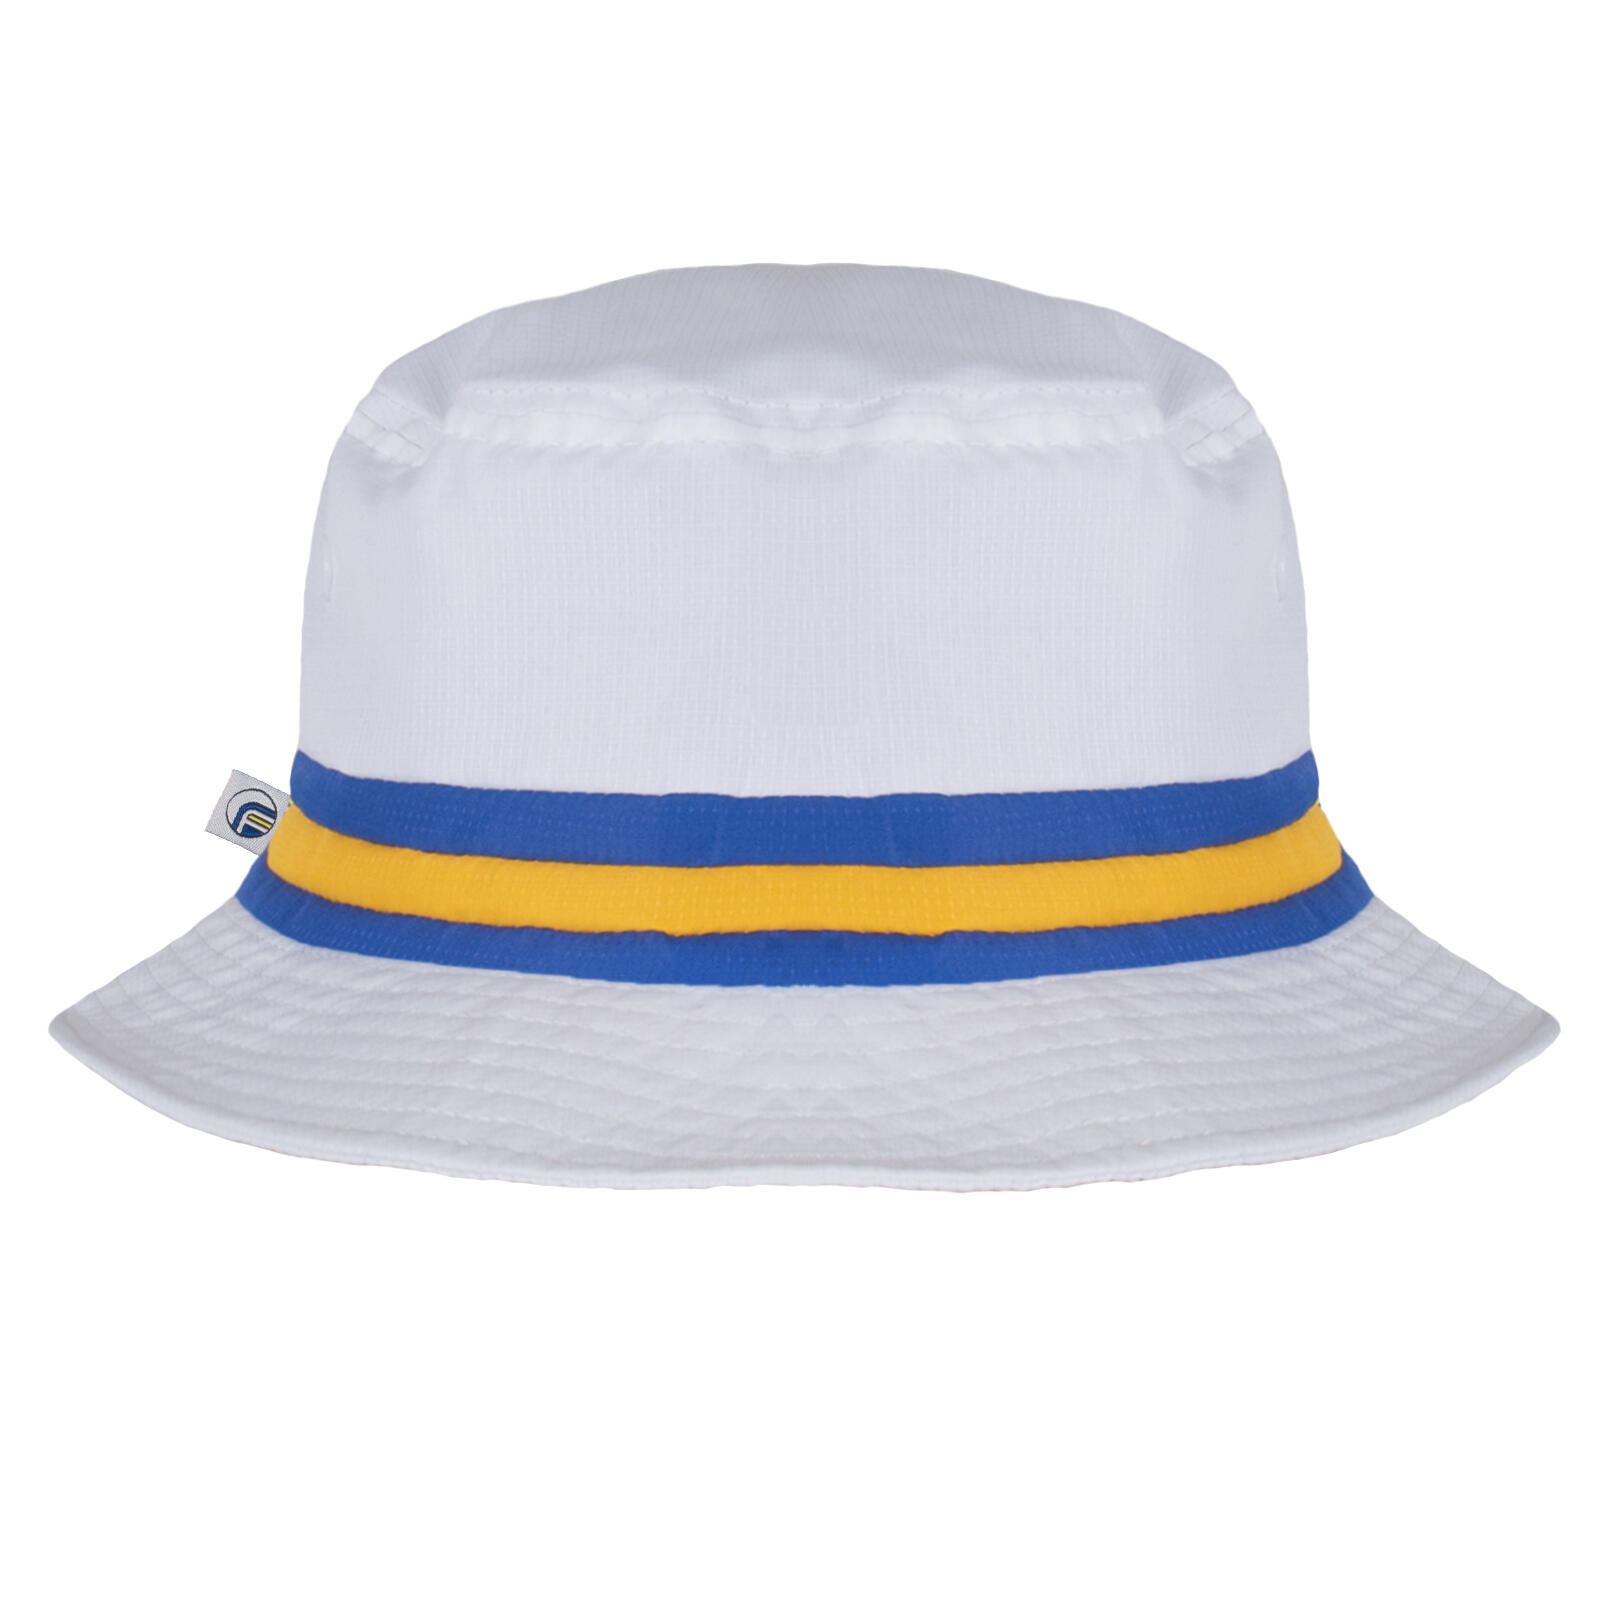 FAN ORIGINALS Fan Originals Leeds Bucket Hat